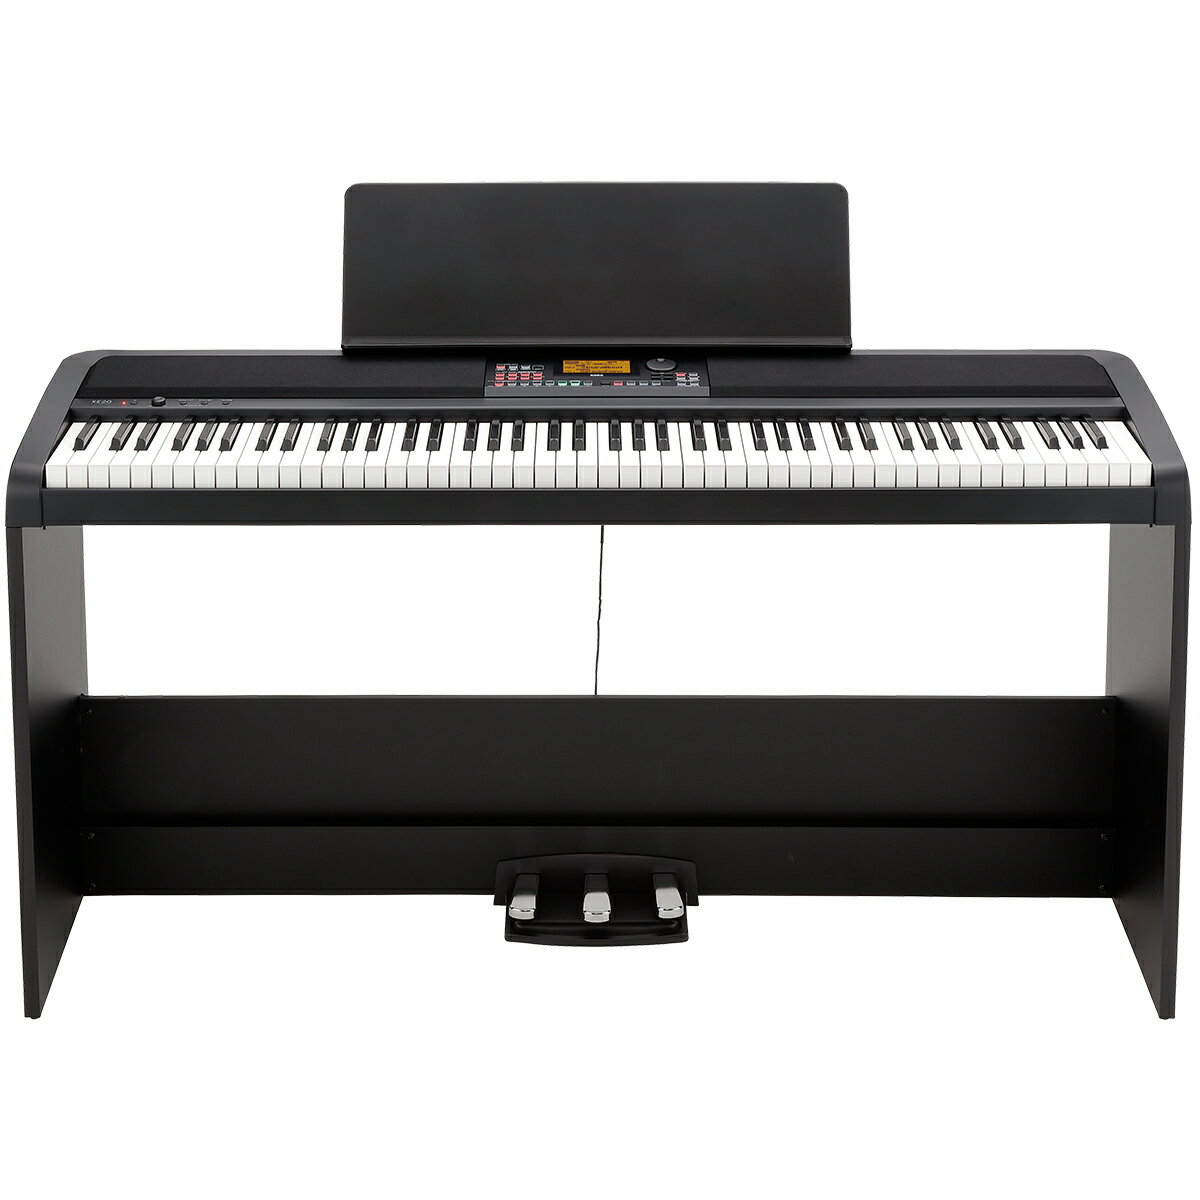 【スタンド付モデル】KORG XE20SP Digital Ensemble Piano 新品 デジタルピアノ[コルグ][88鍵盤][Black,ブラック,黒][Keyboard,キーボード][XE-20SP]